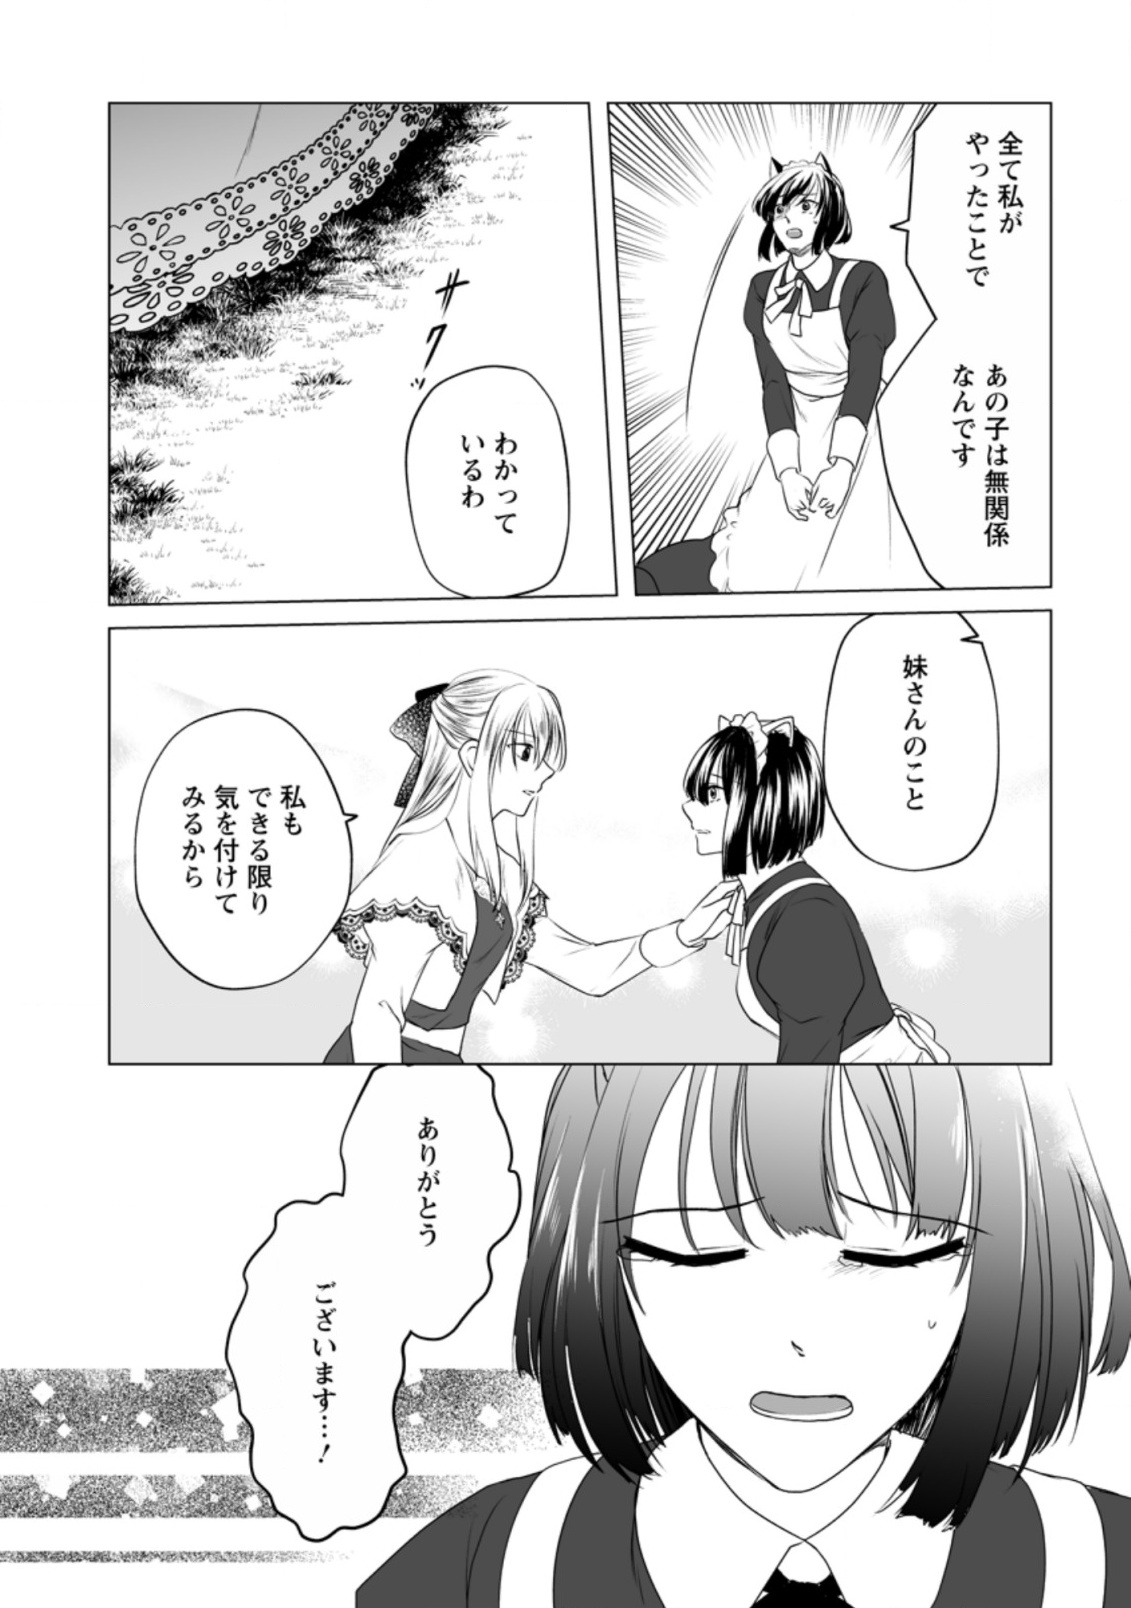 Tenseisaki de Suterareta no de, Mofumofu-tachi to Oryouri shimasu: Okazari Ouhi wa My Pace ni Saikyou desu - Chapter 8 - Page 19